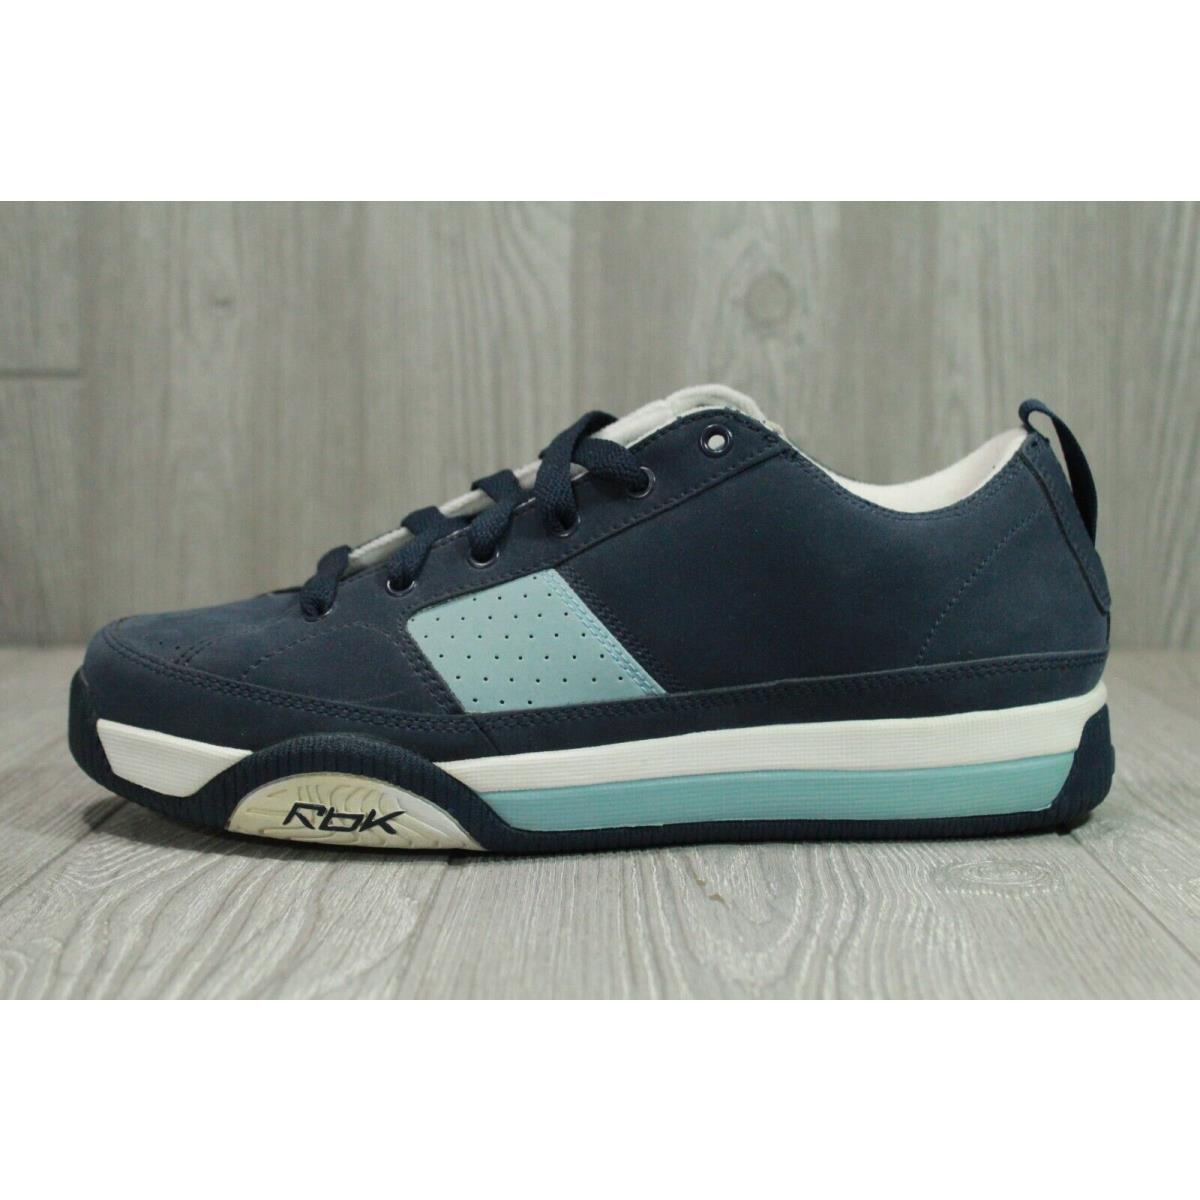 Vintage Reebok OG Low Navy Blue 2005 Mens Shoes Size 9